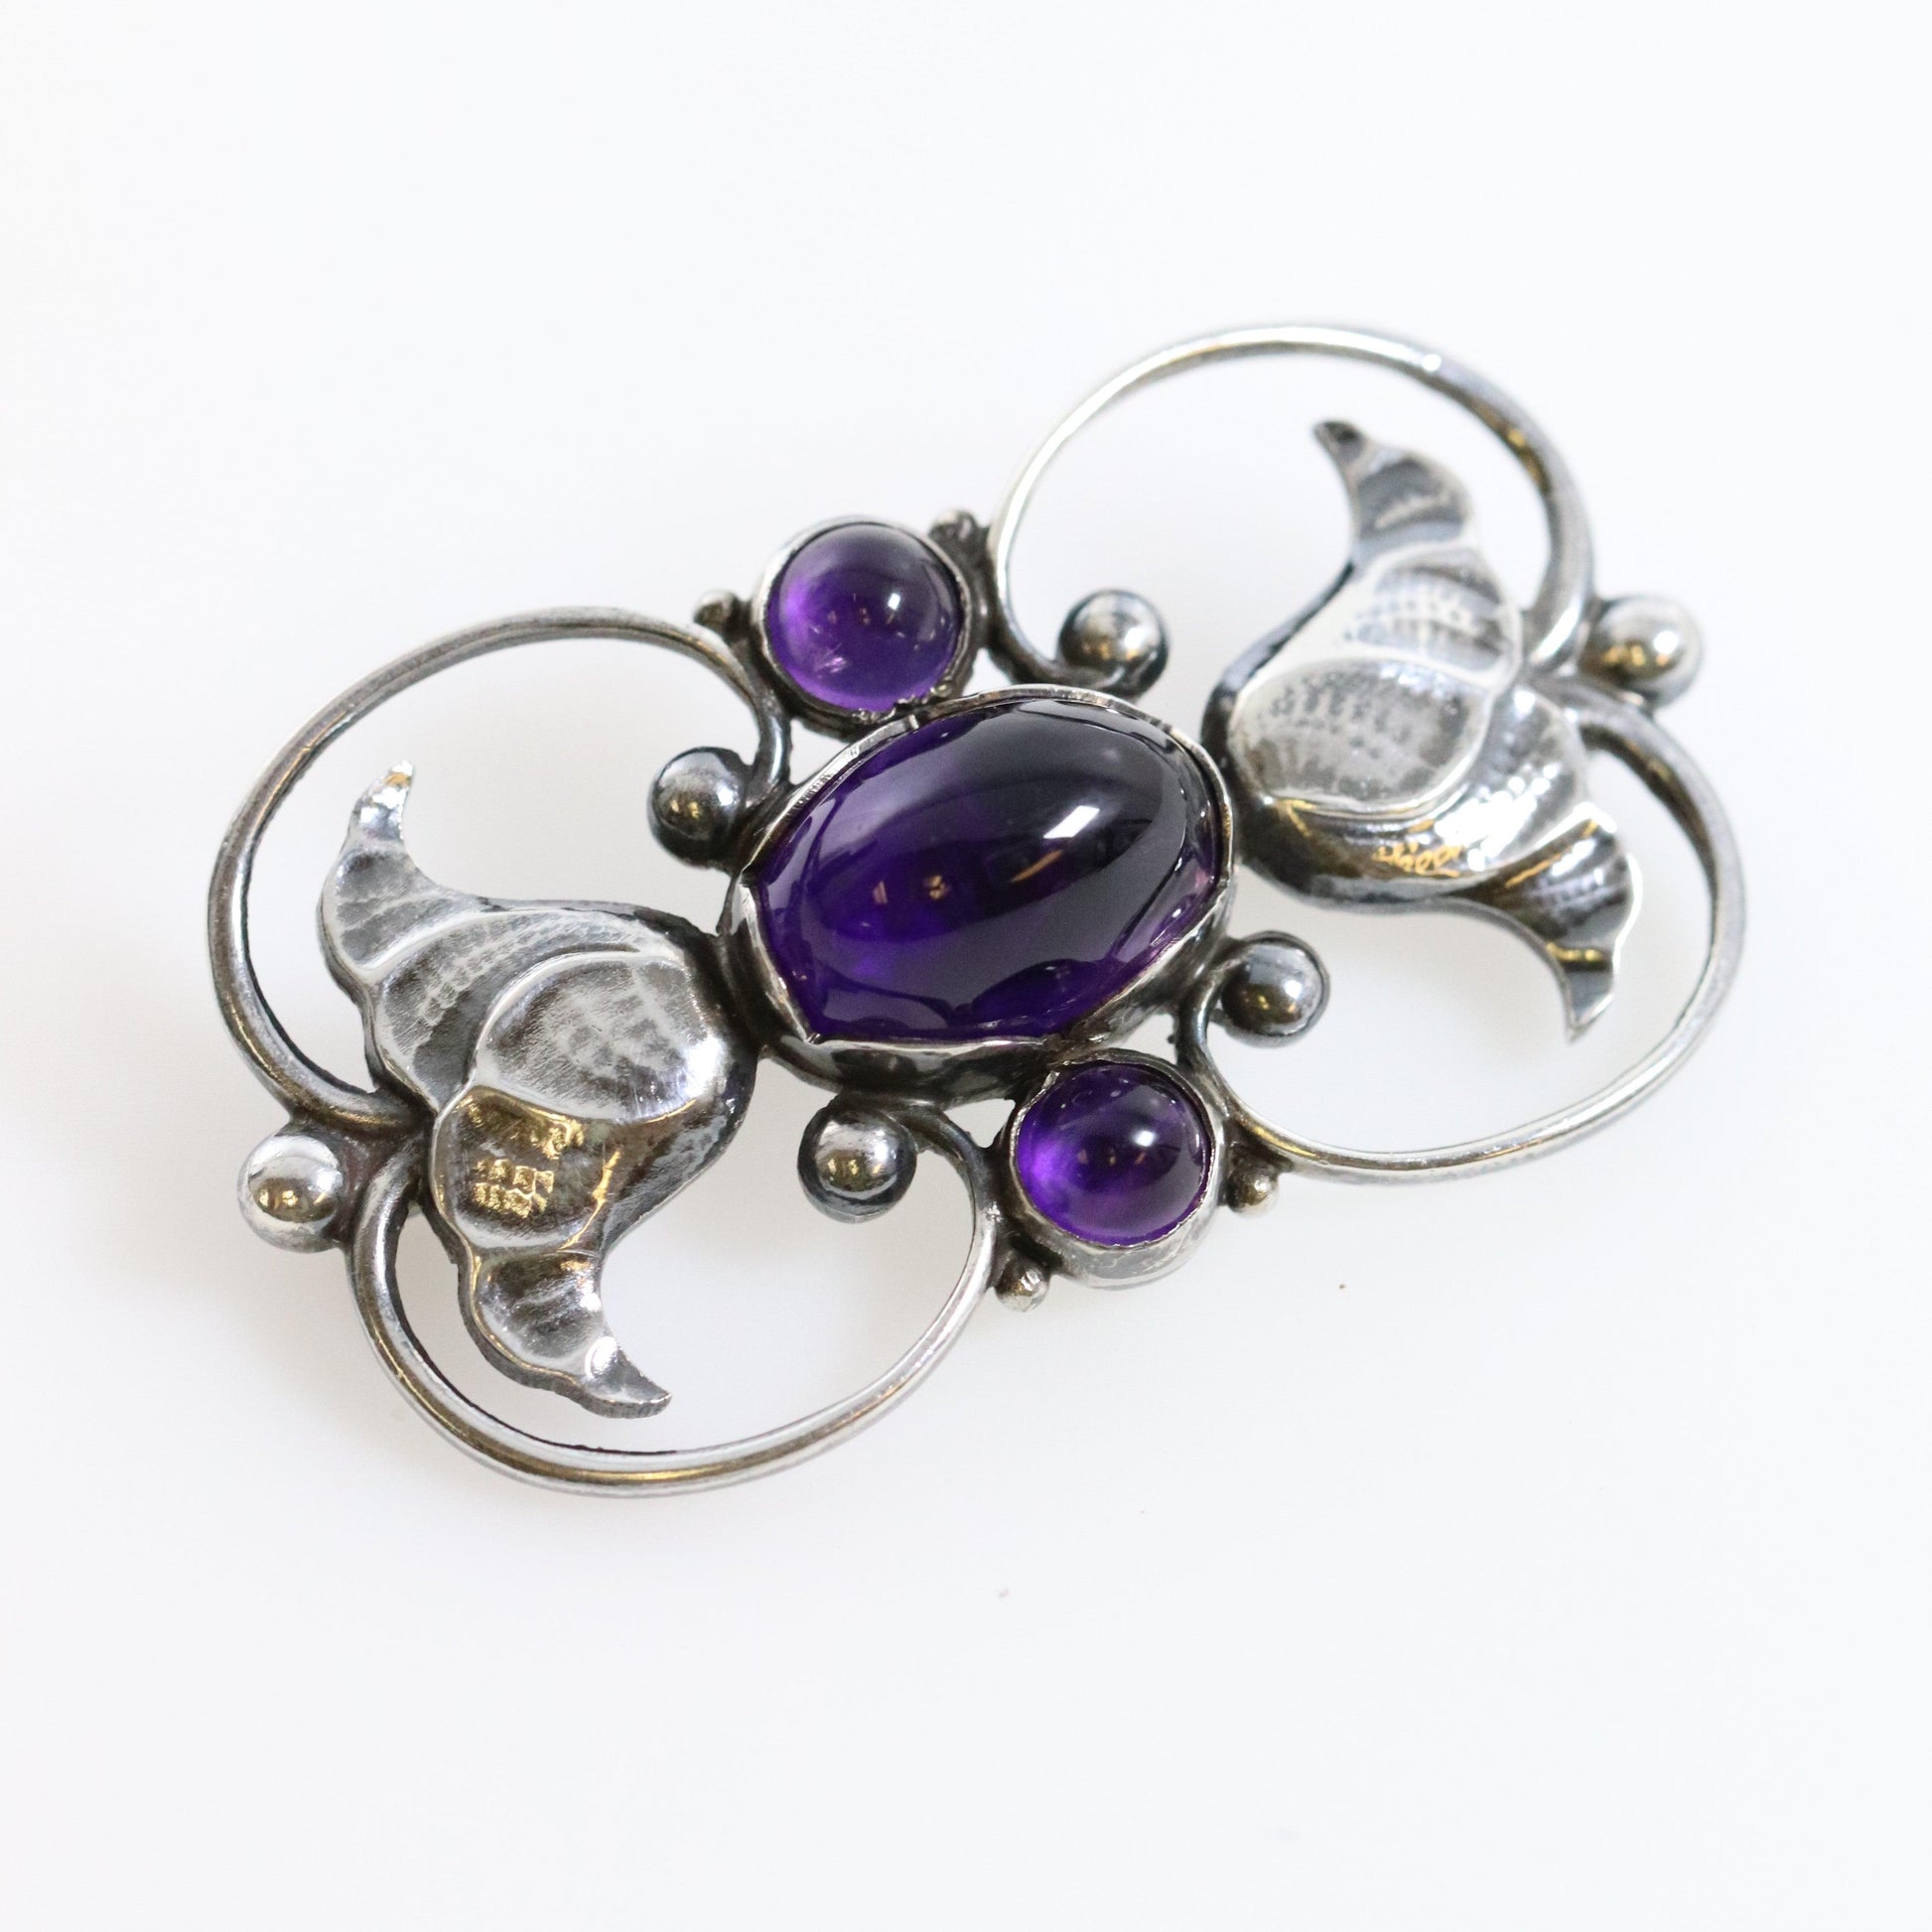 Antique Georg Jensen Jewelry | Art Nouveau Amethyst Brooch 236A - Carmel Fine Silver Jewelry